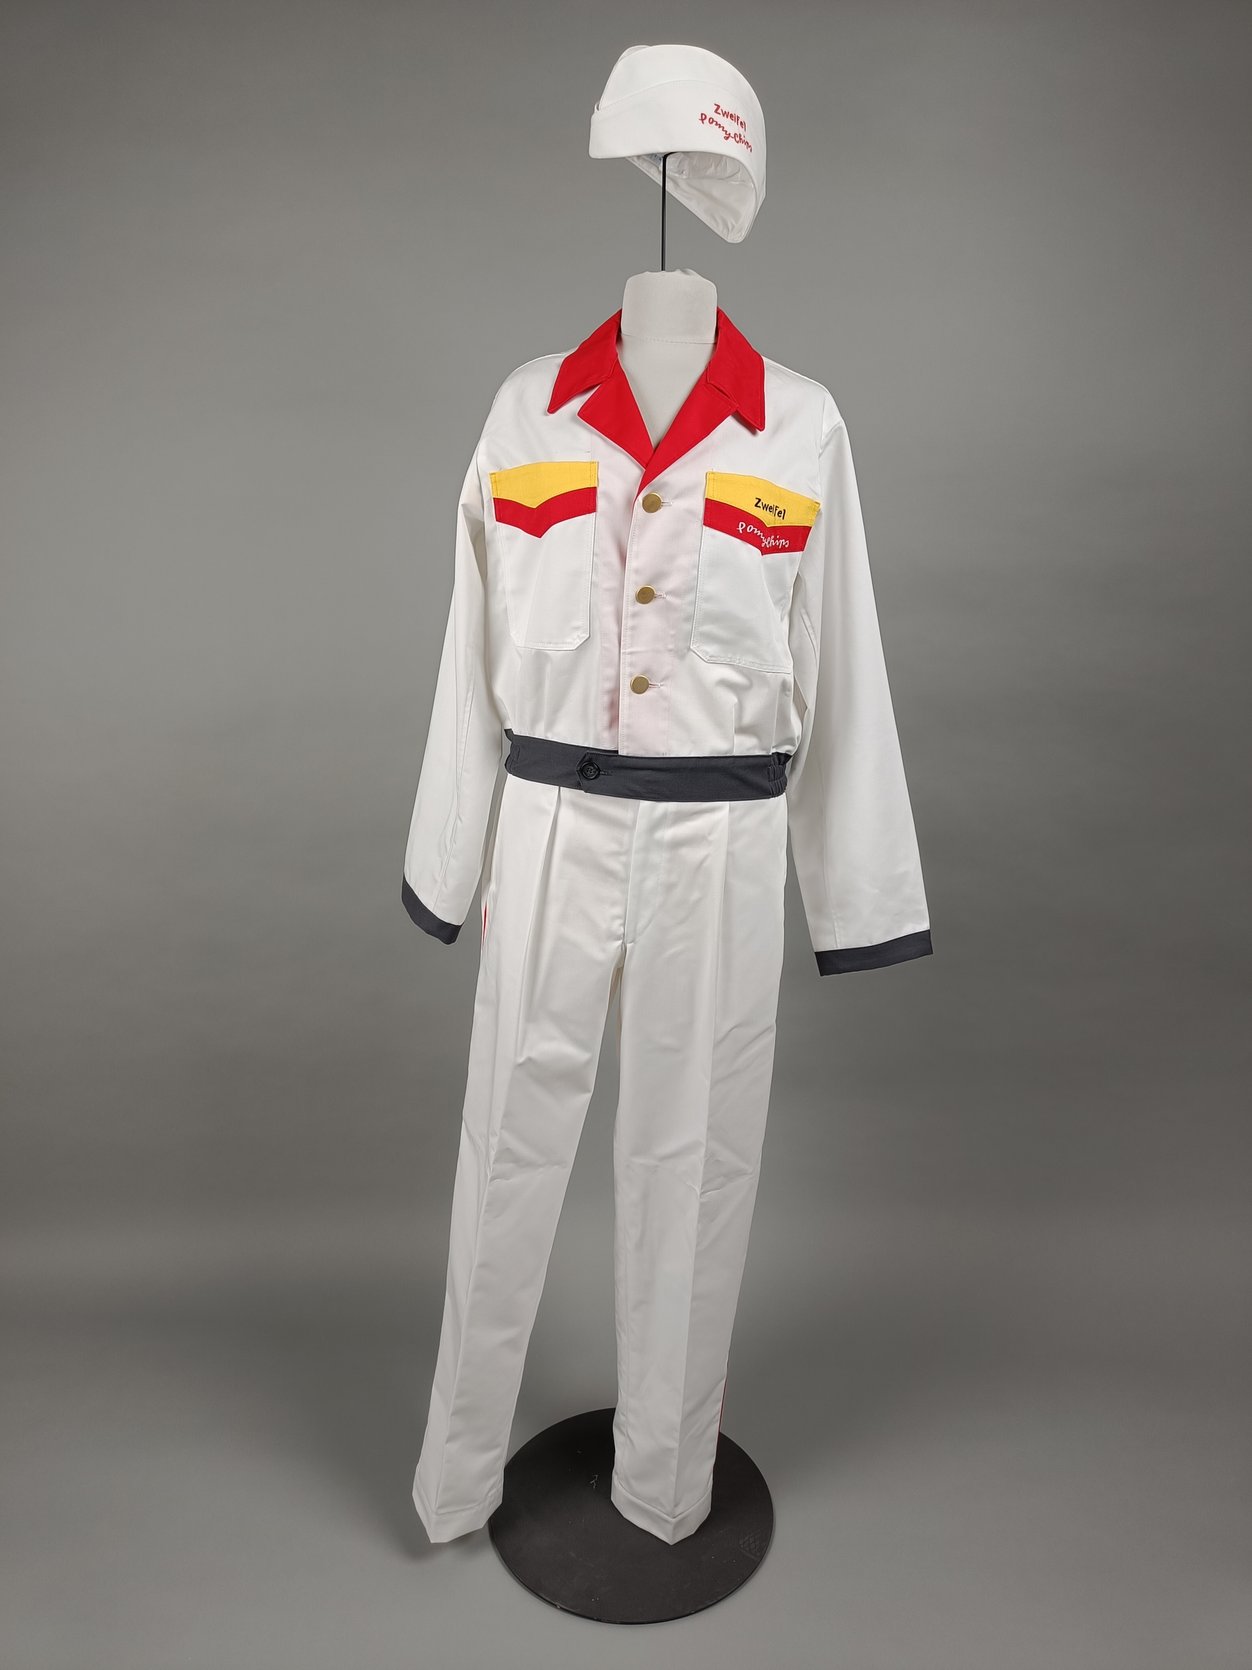 Das Bild zeigt eine Kopie der Frisch-Service-Uniform. Die Kopie ist vorwiegend weiss und weisst an Kragen und Brusttasche rote und gelbe Akzente auf. 